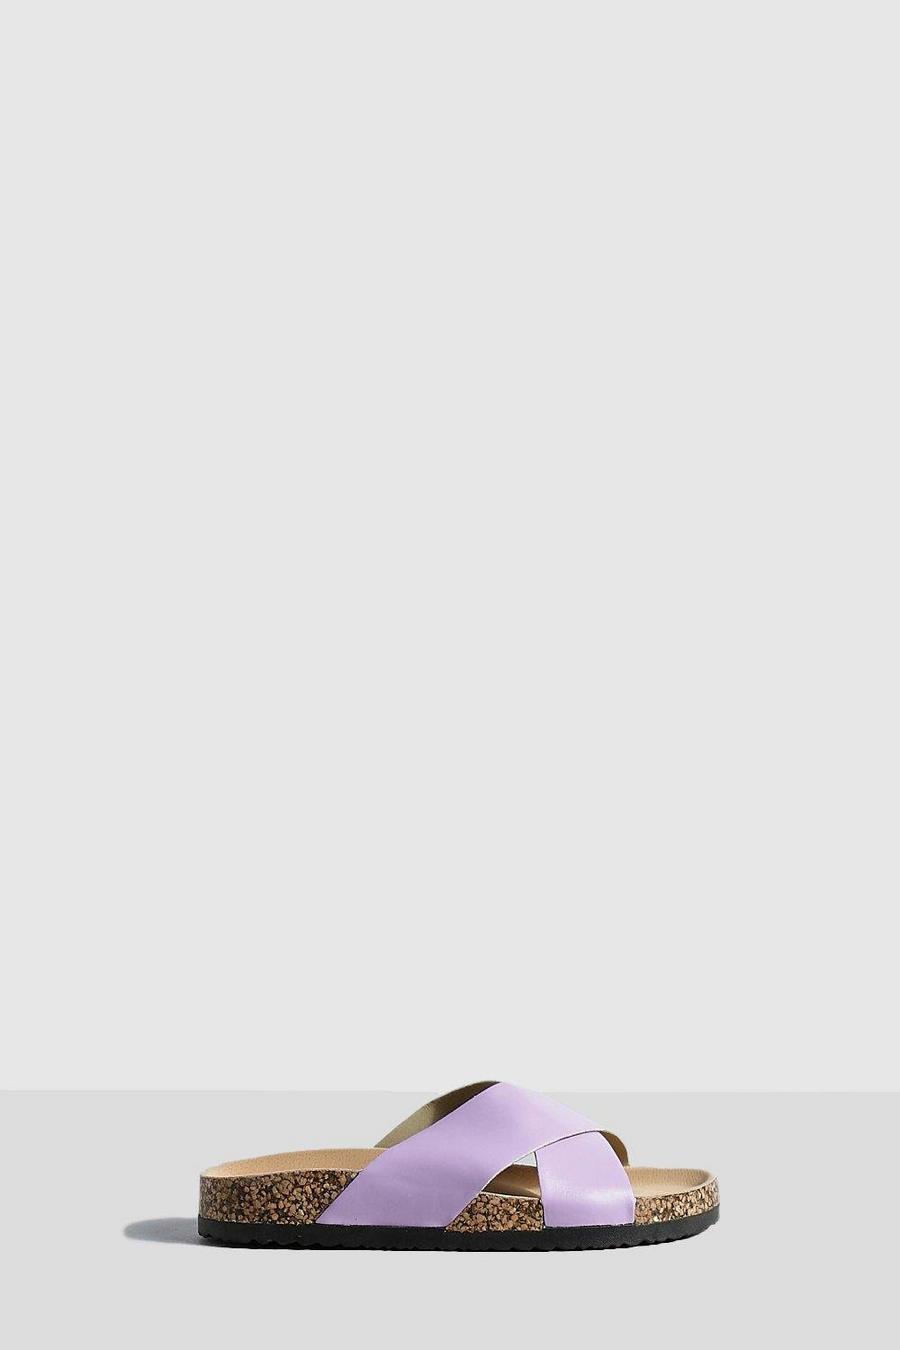 Sandalias con tiras cruzadas y plantilla moldeada, Lilac image number 1